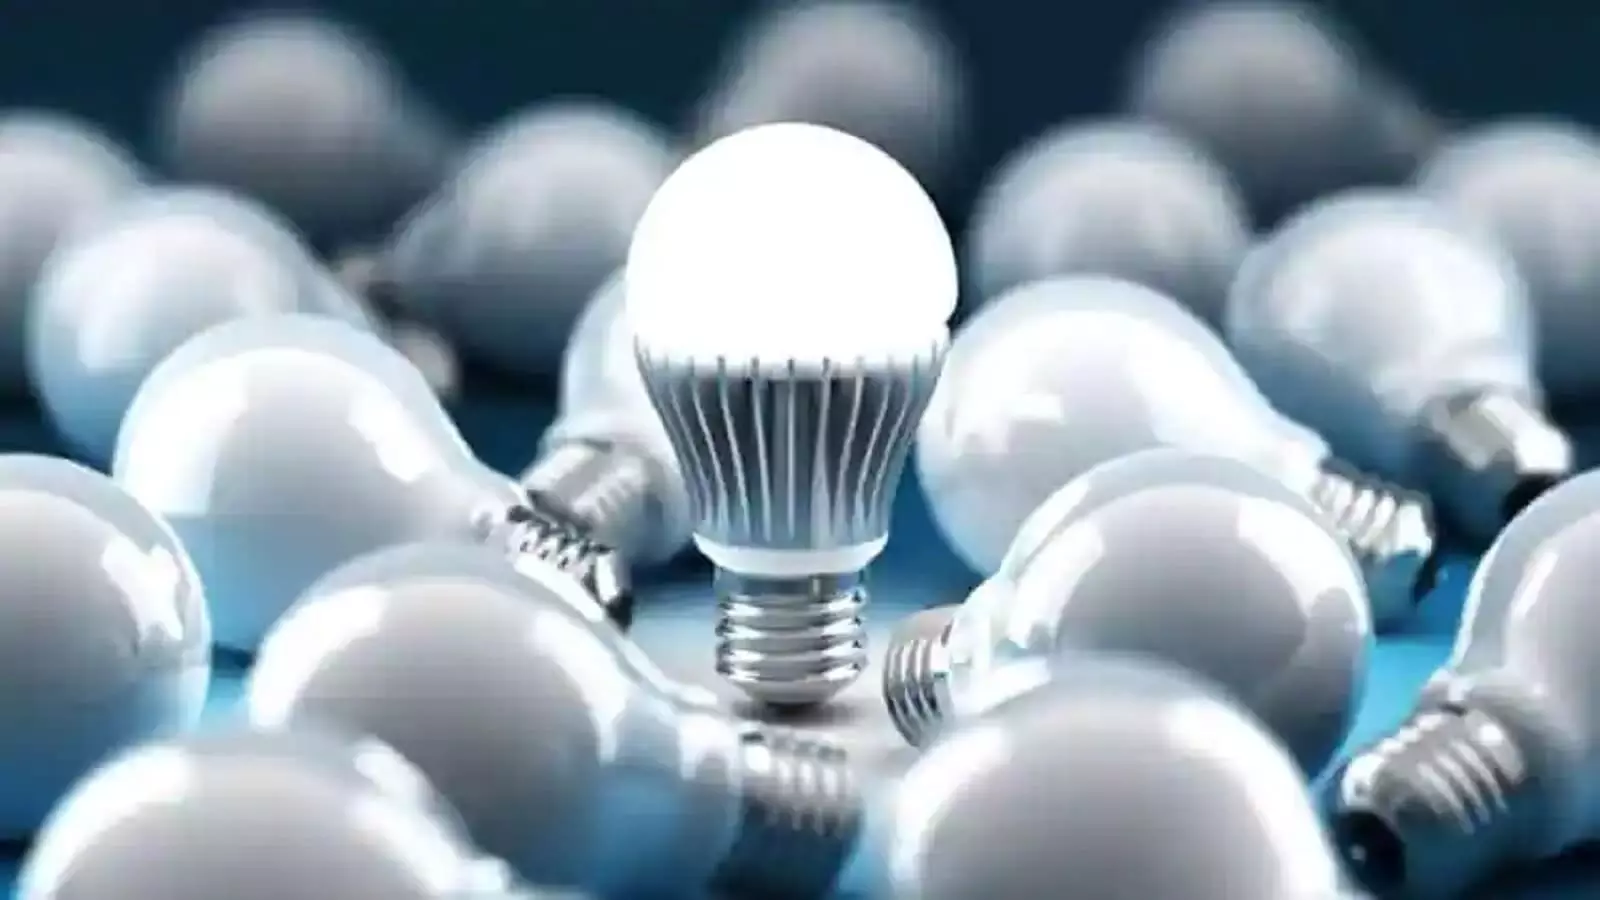 Rechargeable LED Bulb: बार-बार लाईट के आने-जाने से परेशान हैं तो खरीदें रिचार्जेबल बल्ब, नहीं पड़ेगी इन्वेर्टर की जरूरत